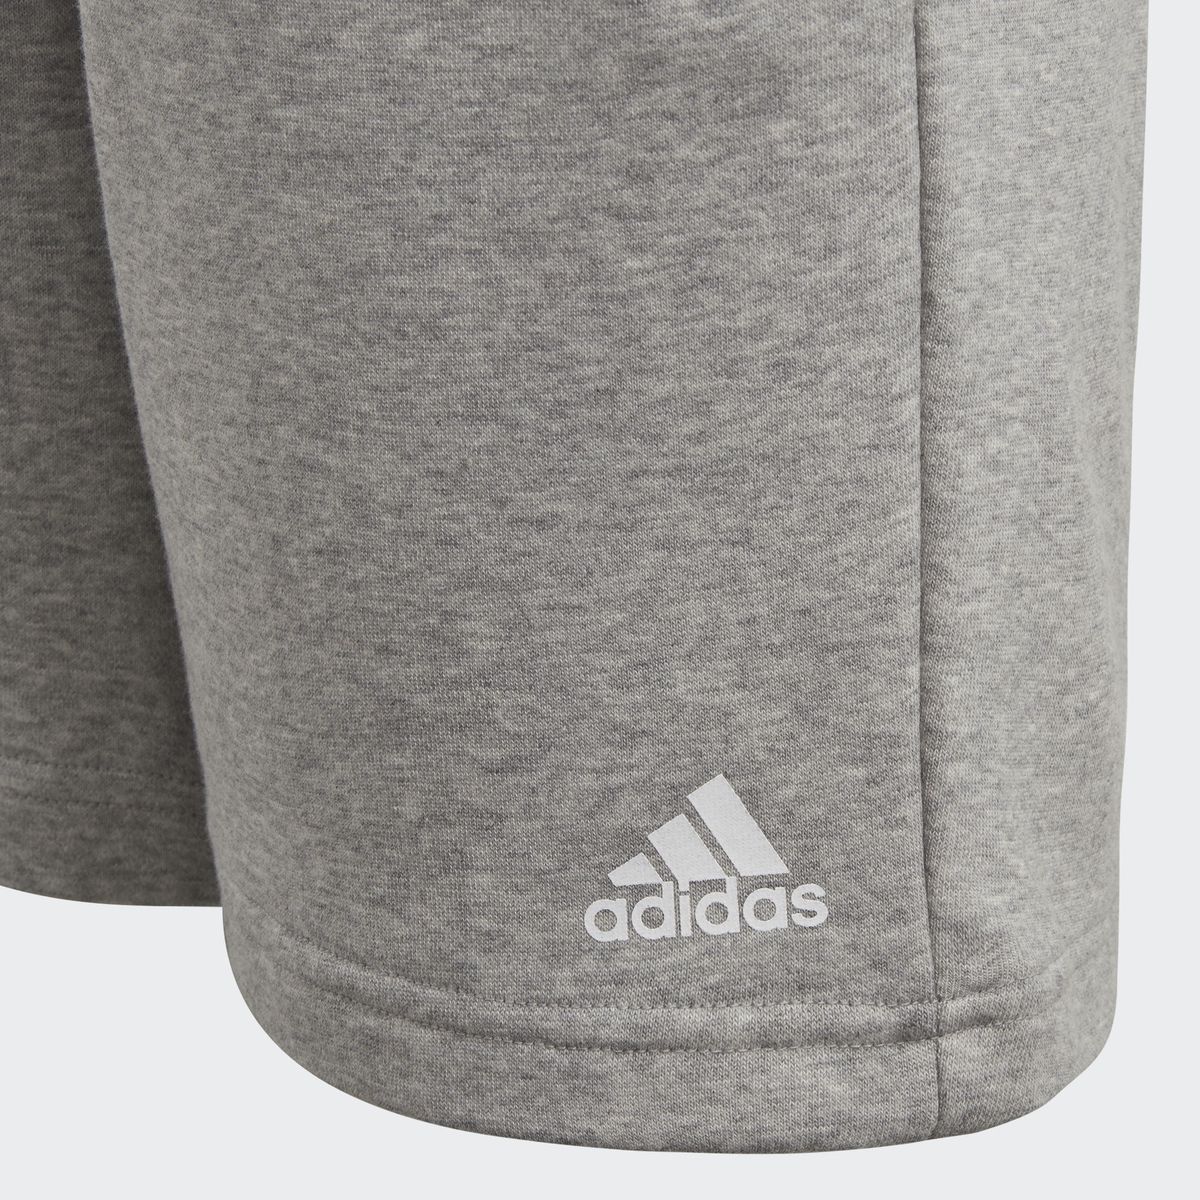    Adidas Yb Logo Short, : . CF6534.  116